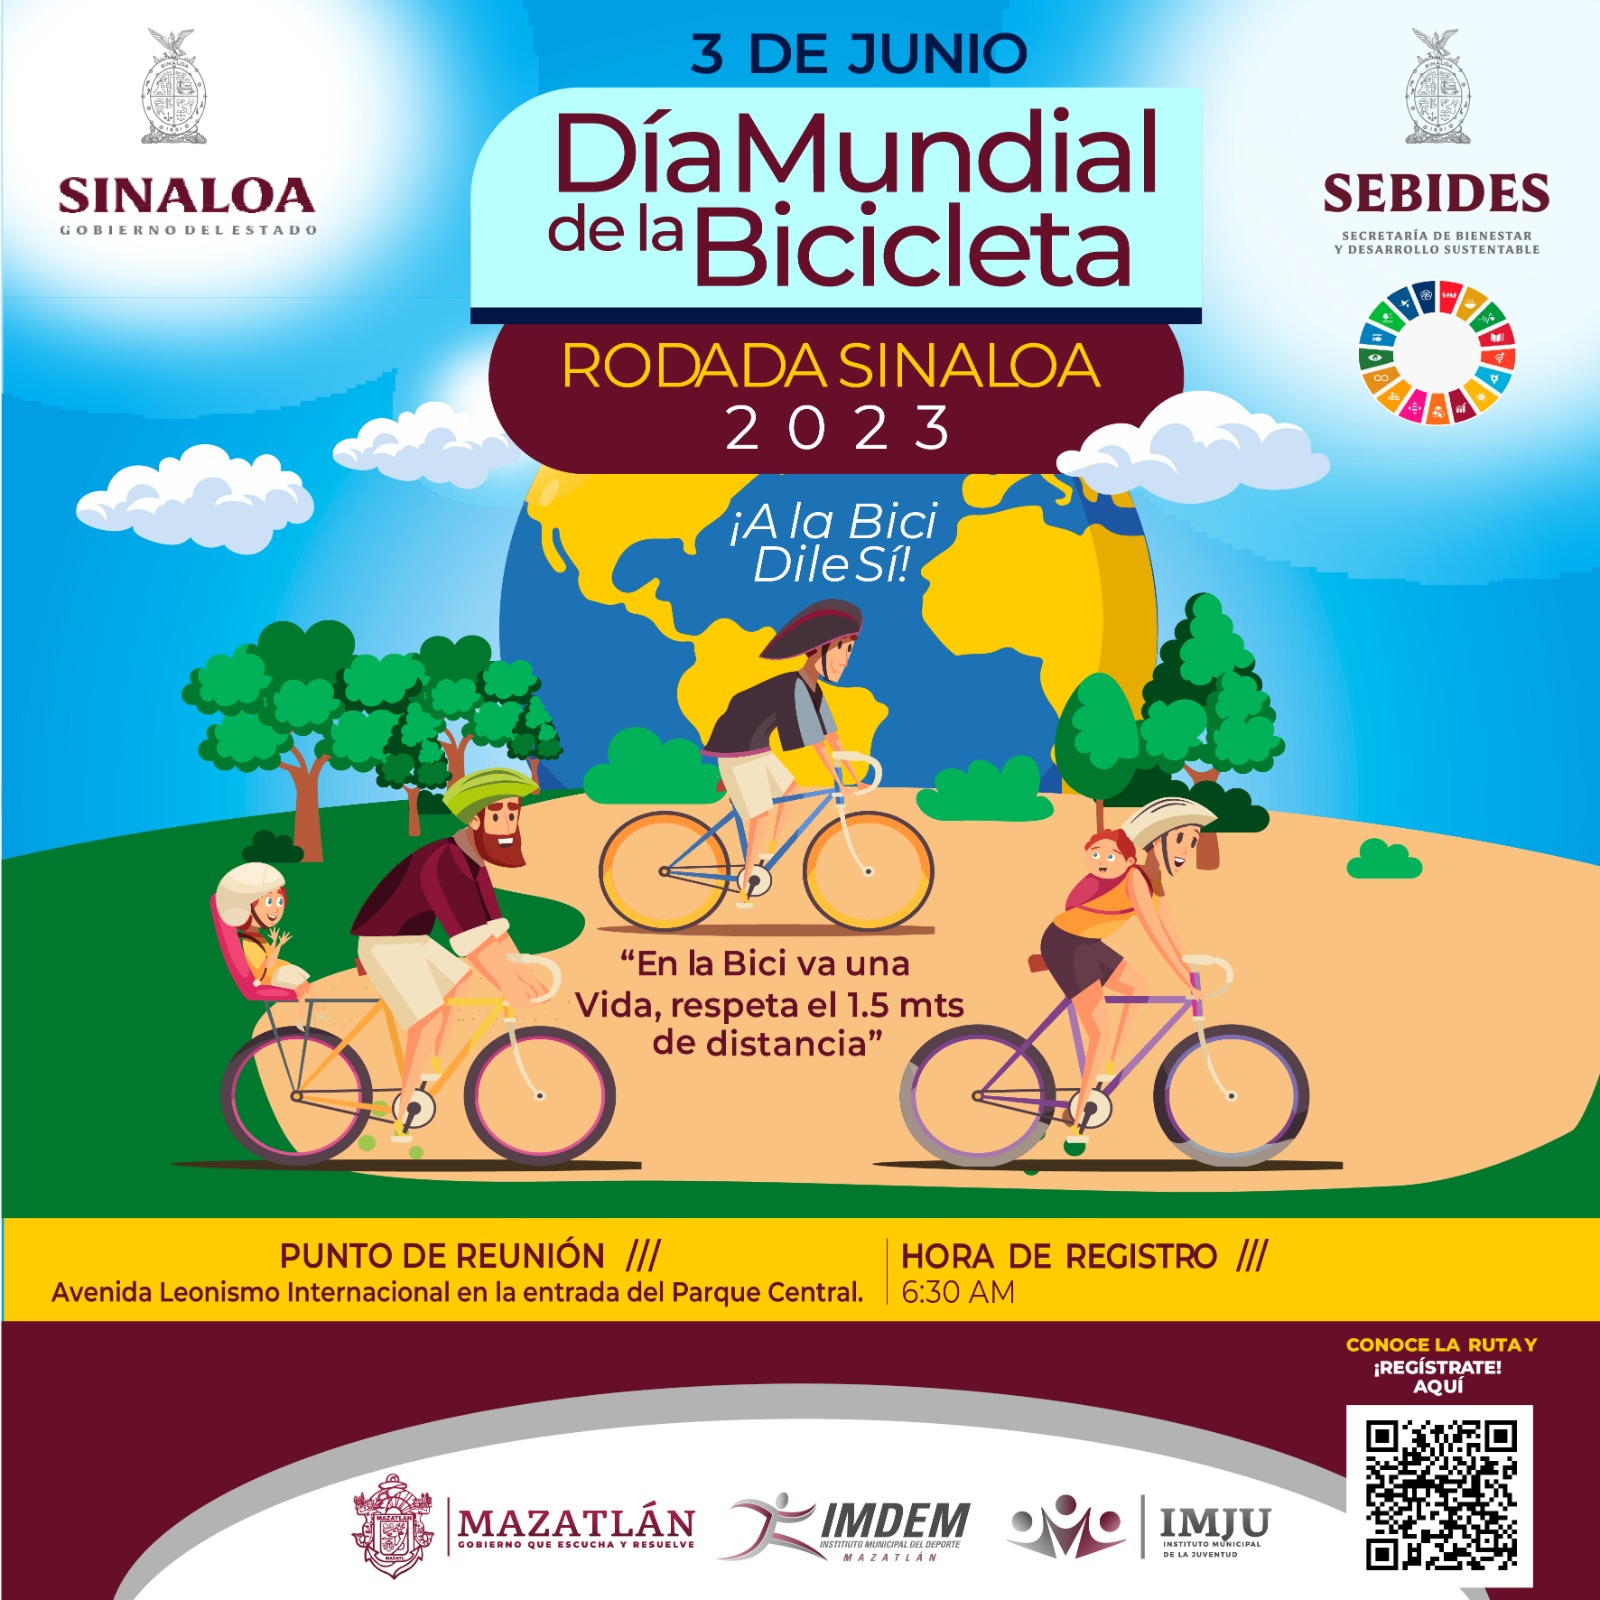 Celebrará Mazatlán Día Mundial de la Bicicleta con rodada familiar.